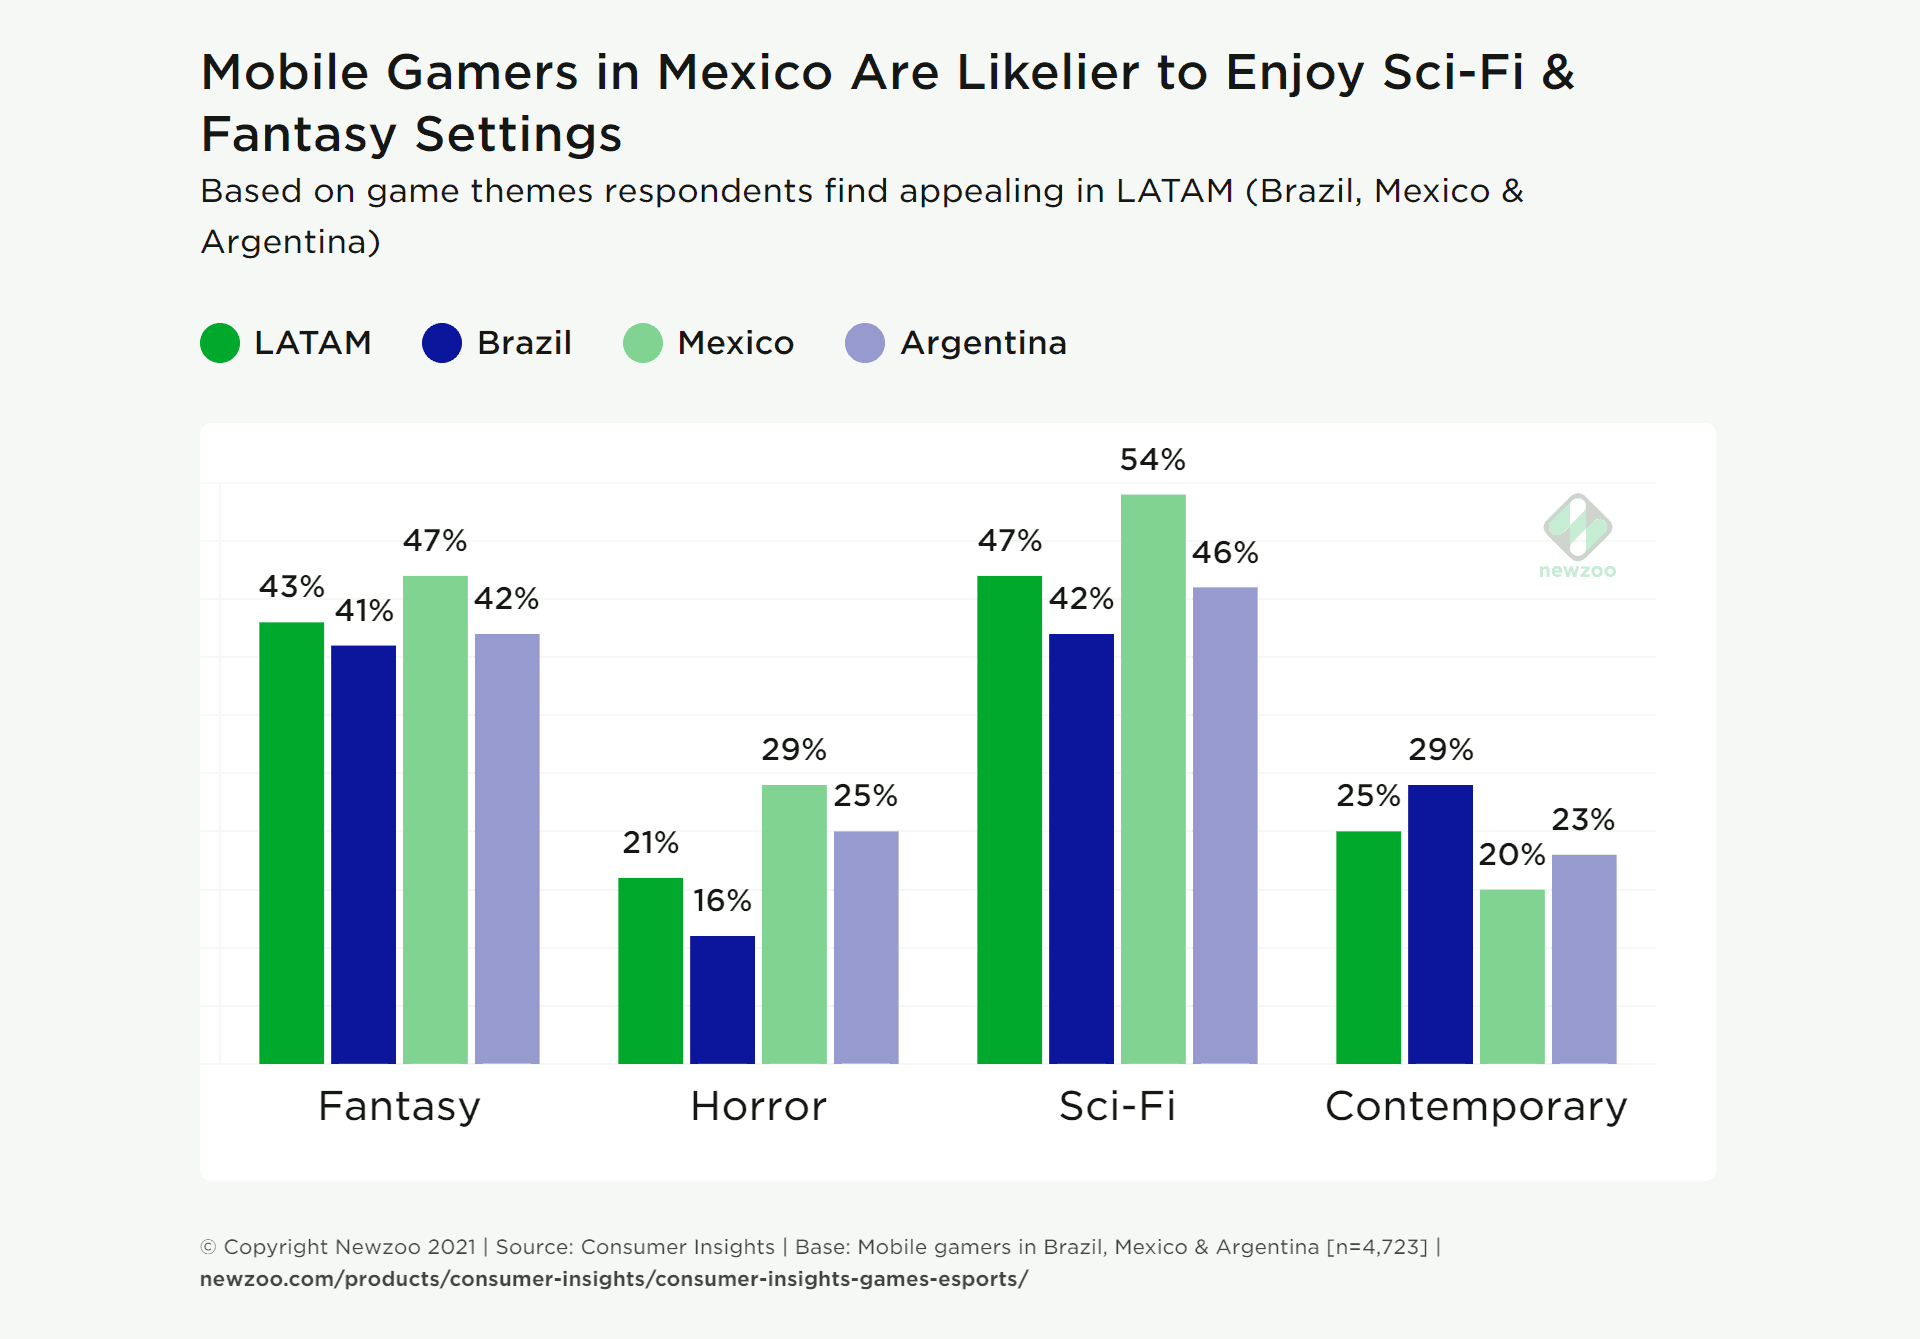 Les joueurs mobiles au Mexique sont plus susceptibles de choisir des genres de science-fiction et de fantastique